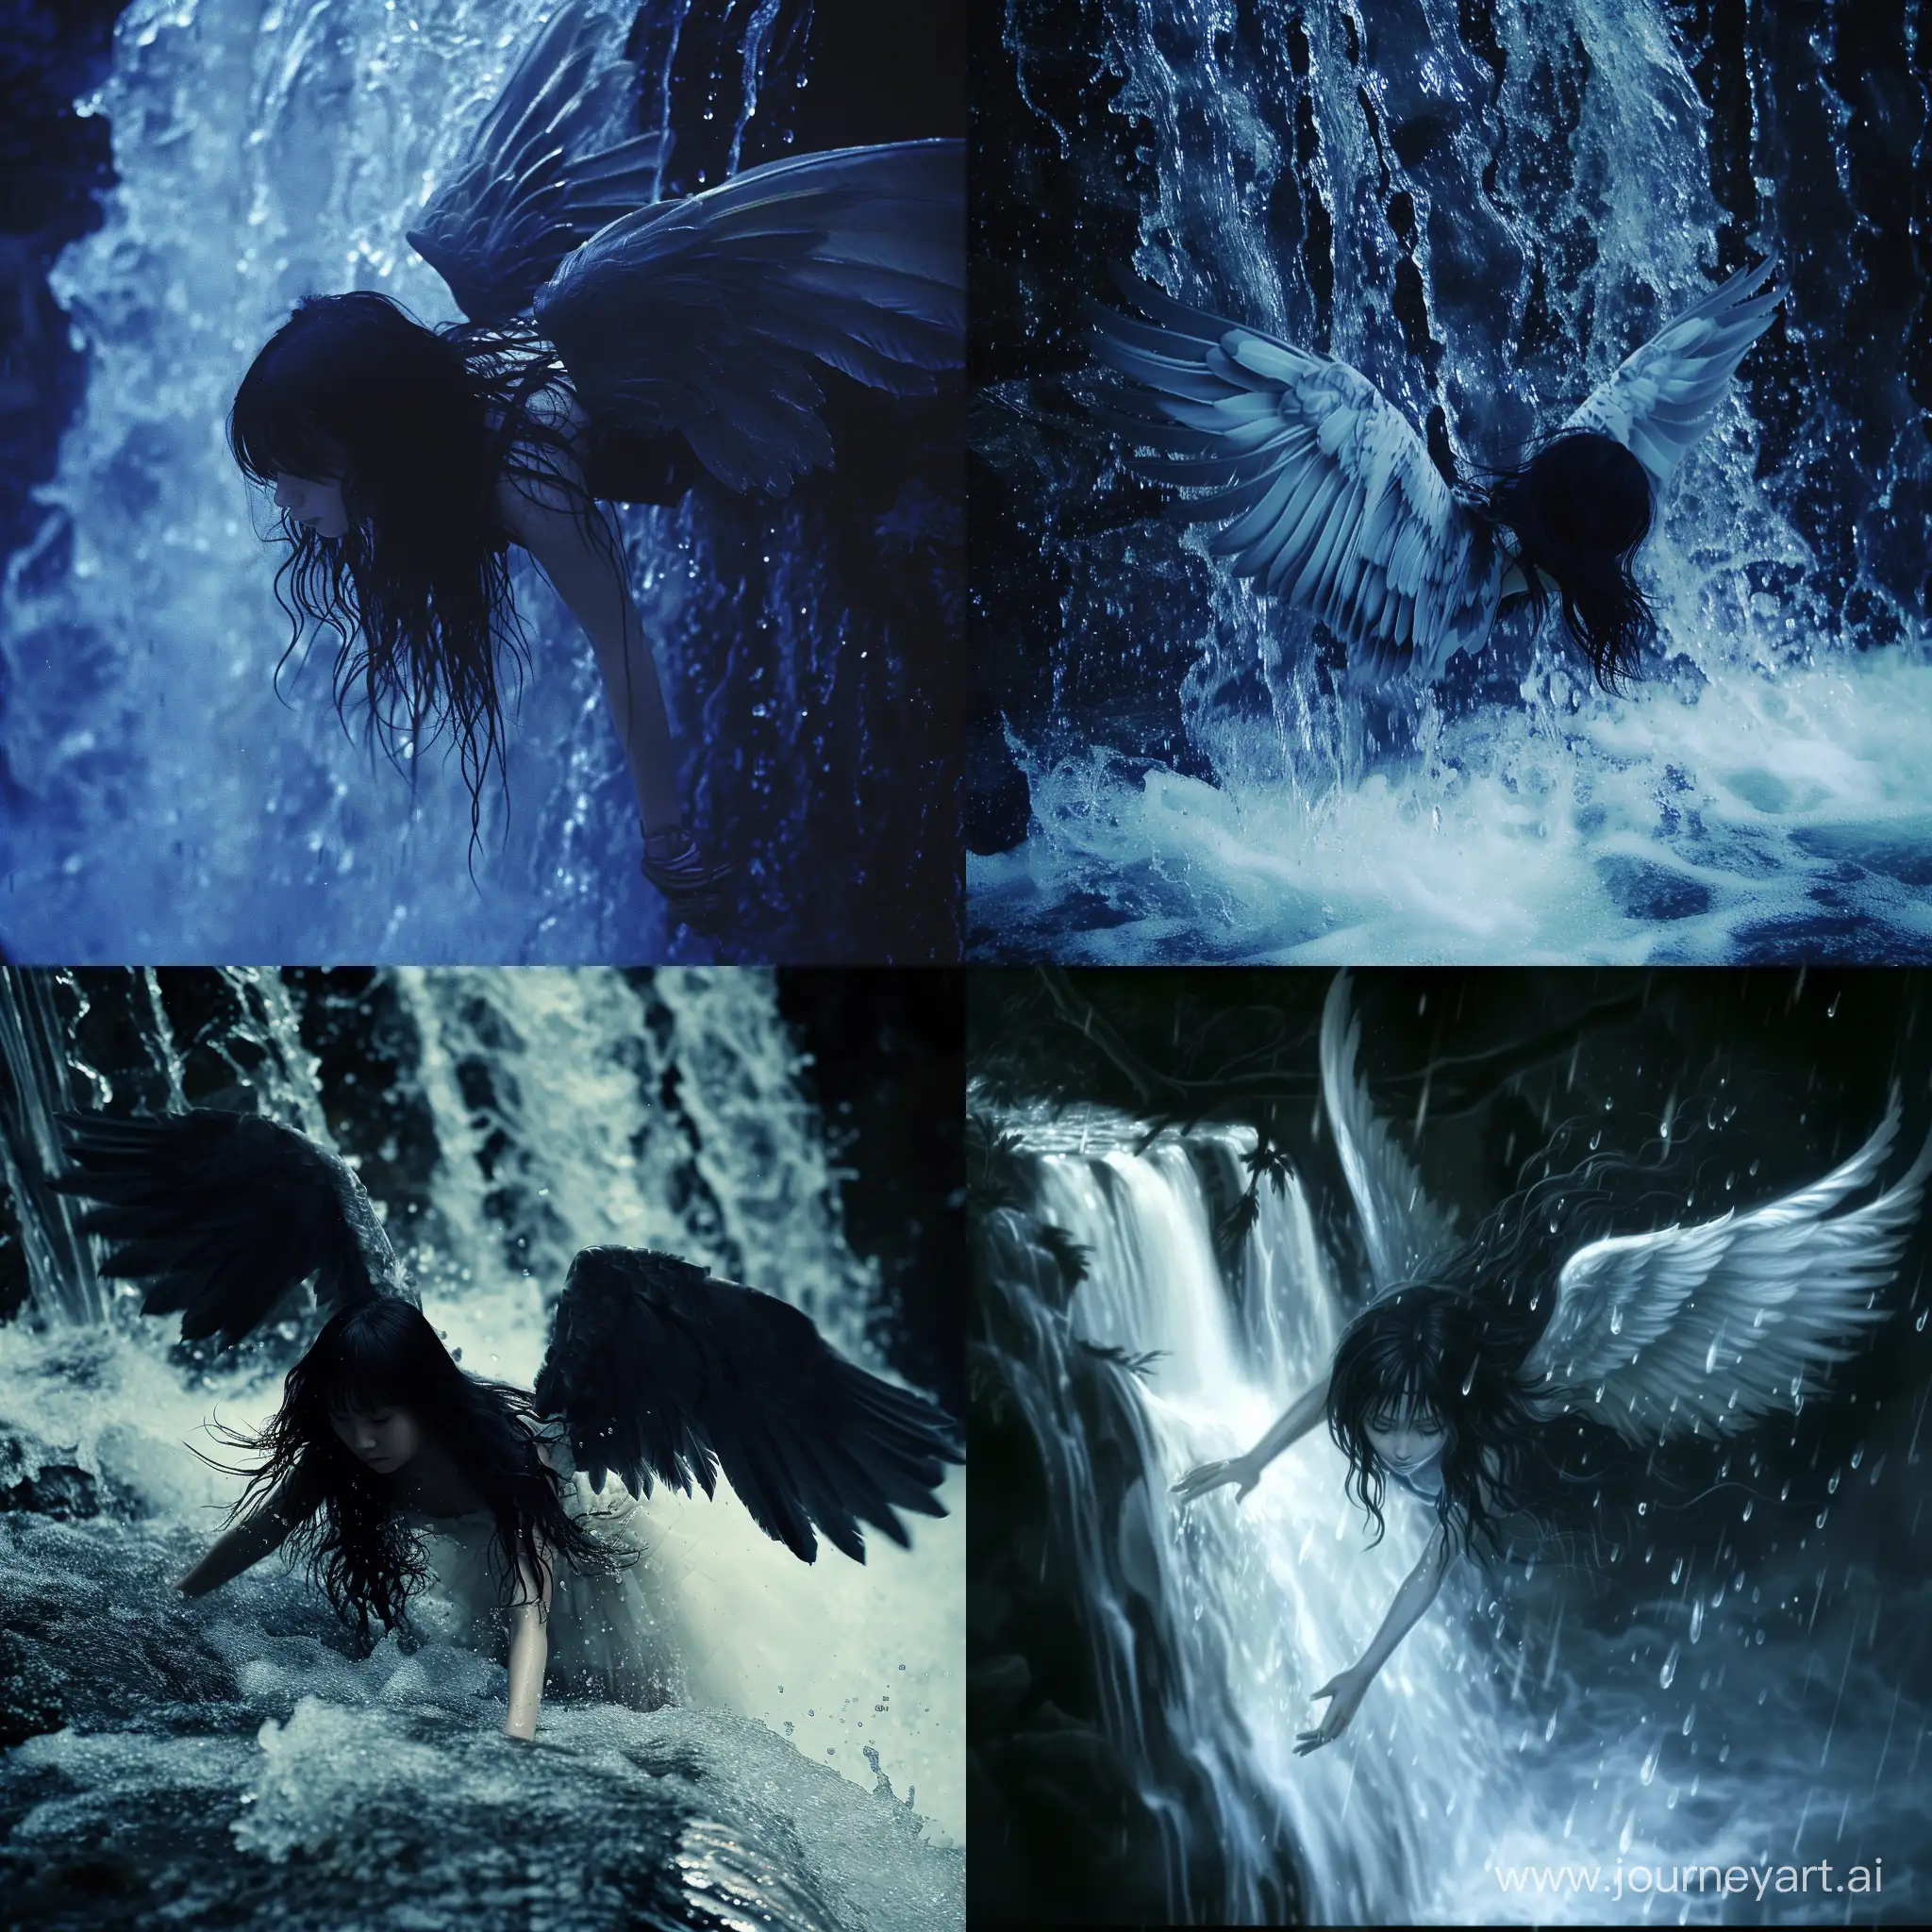 Ночь. Водопад. Девушка с чёрными волосами падает с водопада. У девушки крылья. 